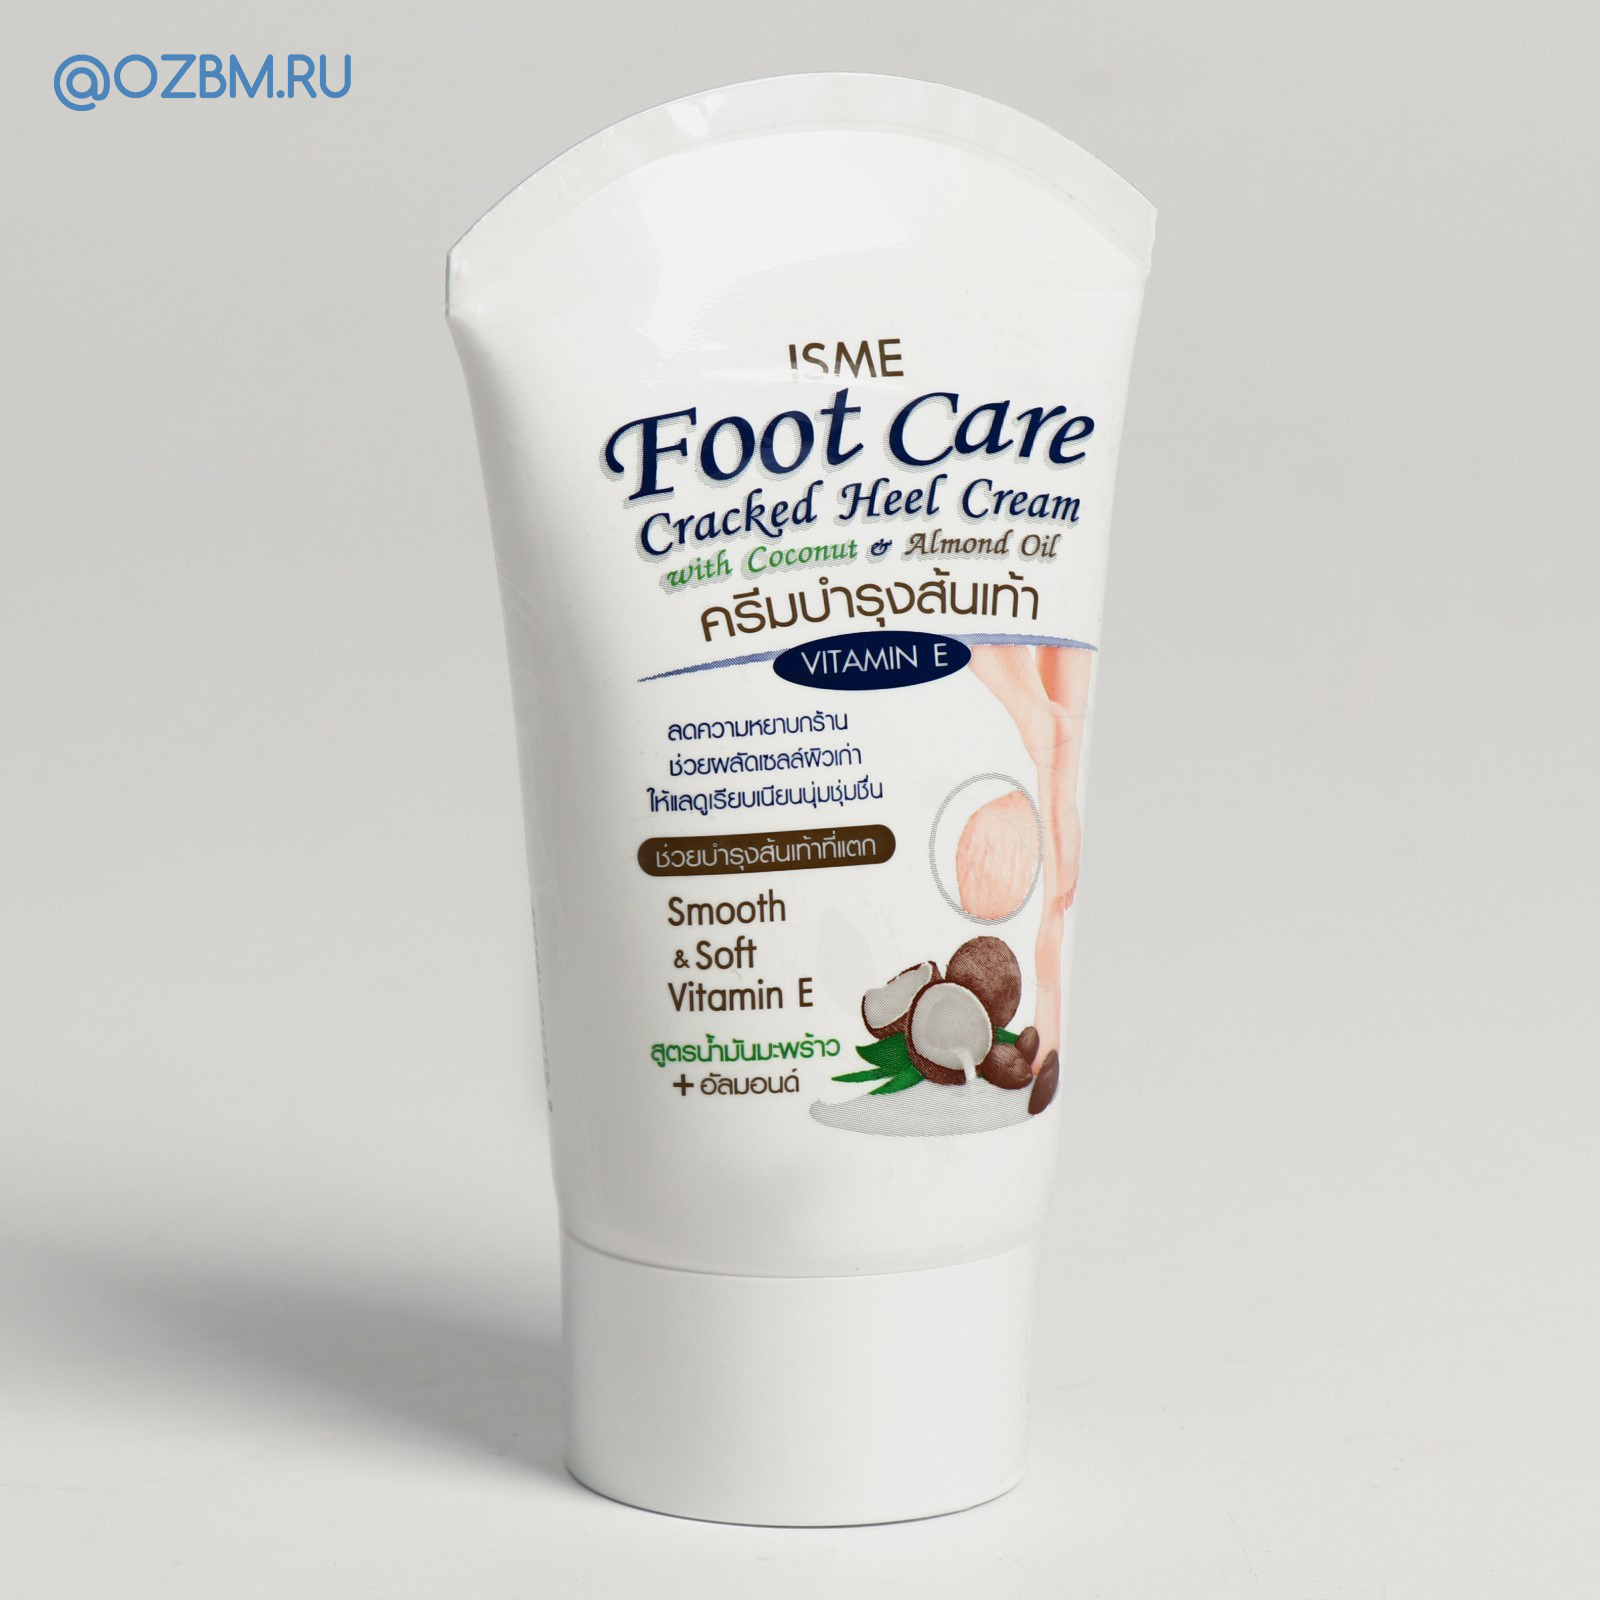 Кокосовый крем для ног из Таиланда Isme Foot Care Cracked Heel Cream. ТАИЛАНД